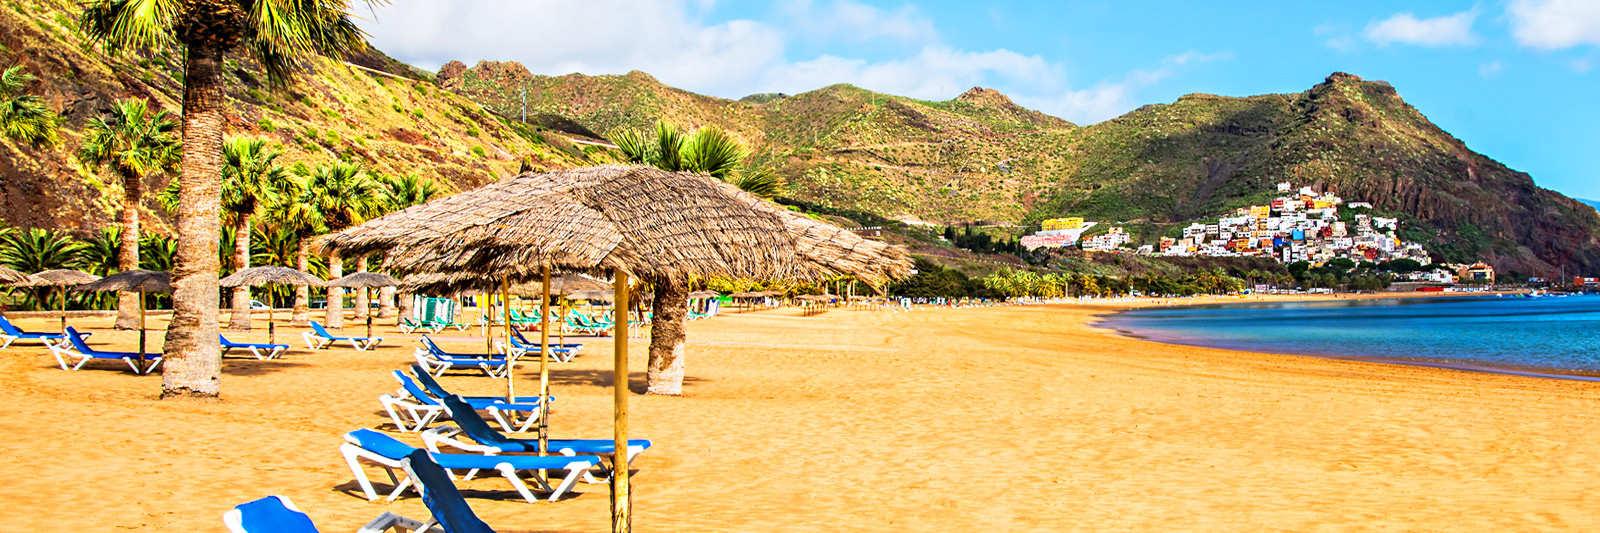 652 Ferienwohnungen und Ferienhäuser in Playa de las Américas - tourist-online.de